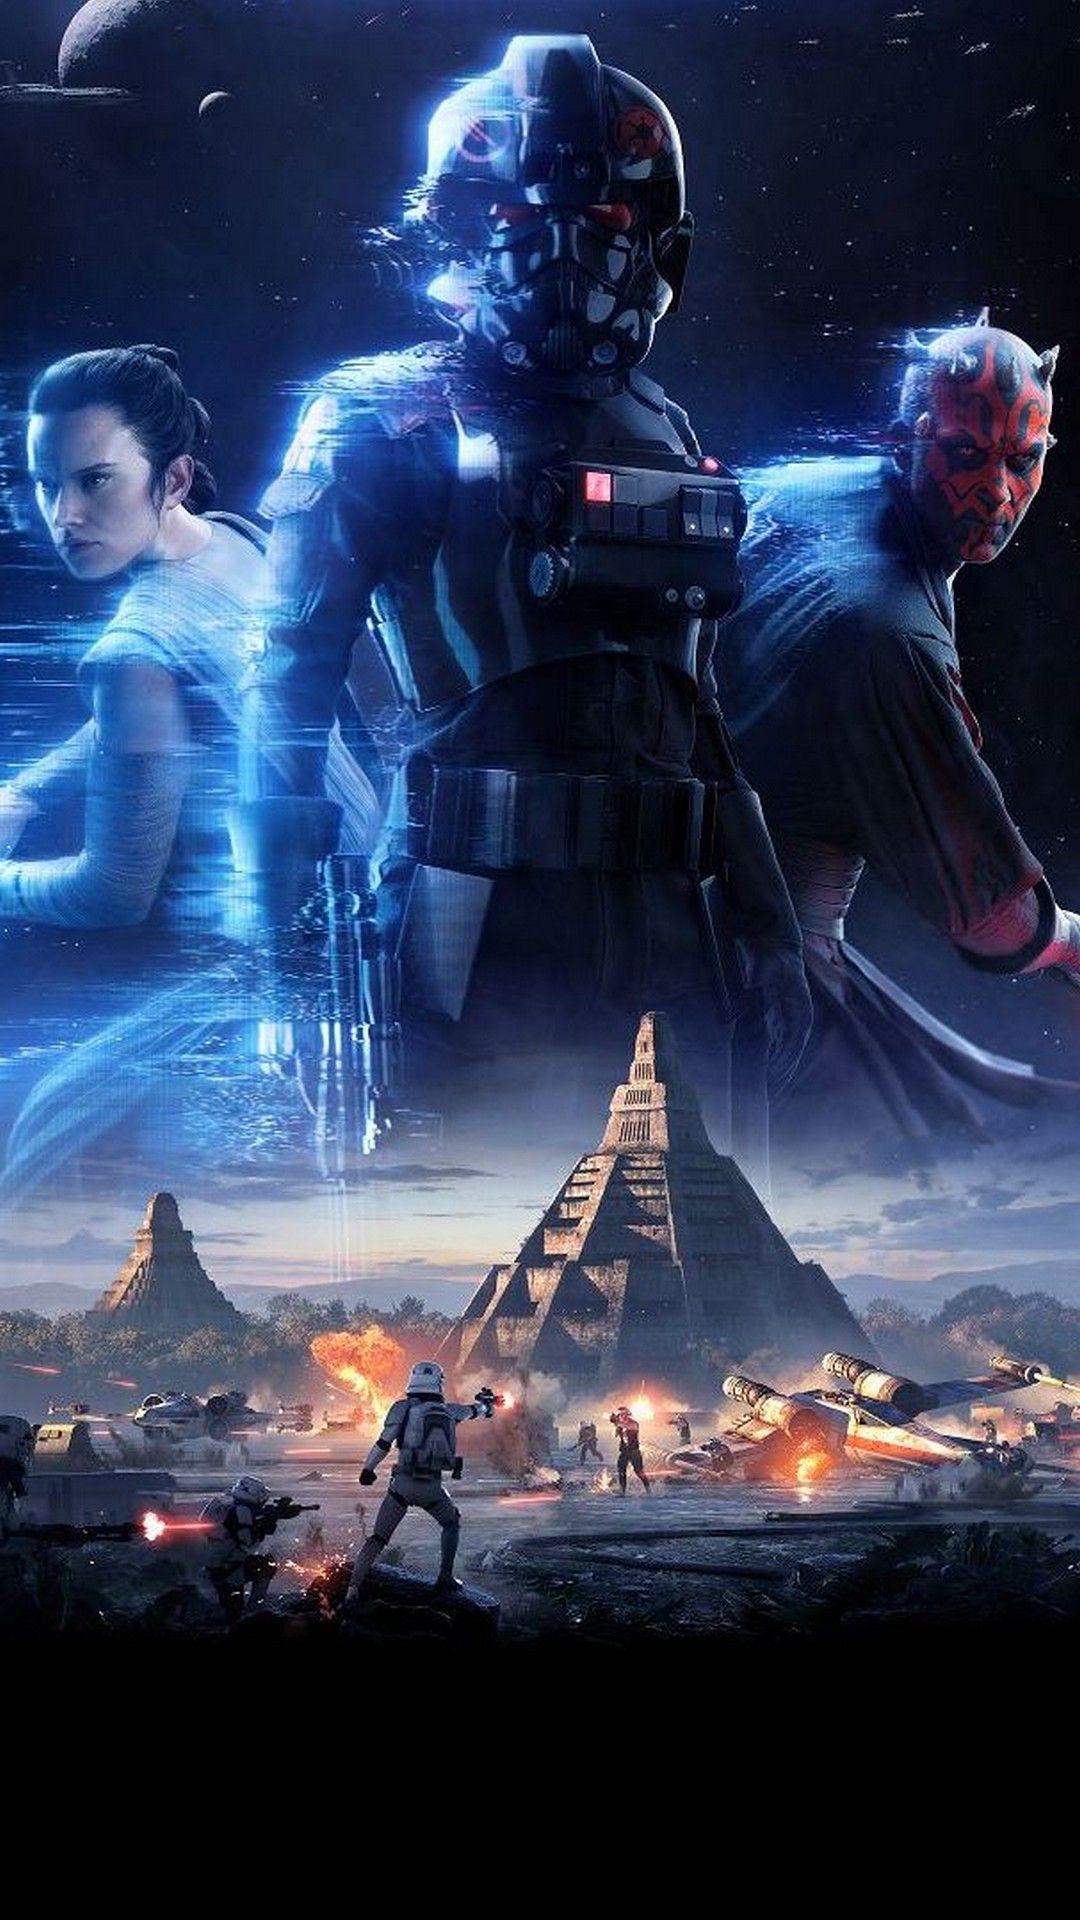 Star Wars Battlefront 2 Games iPhone Wallpaper iPhone Wallpaper. Star wars games, Star wars image, Star wars battlefront